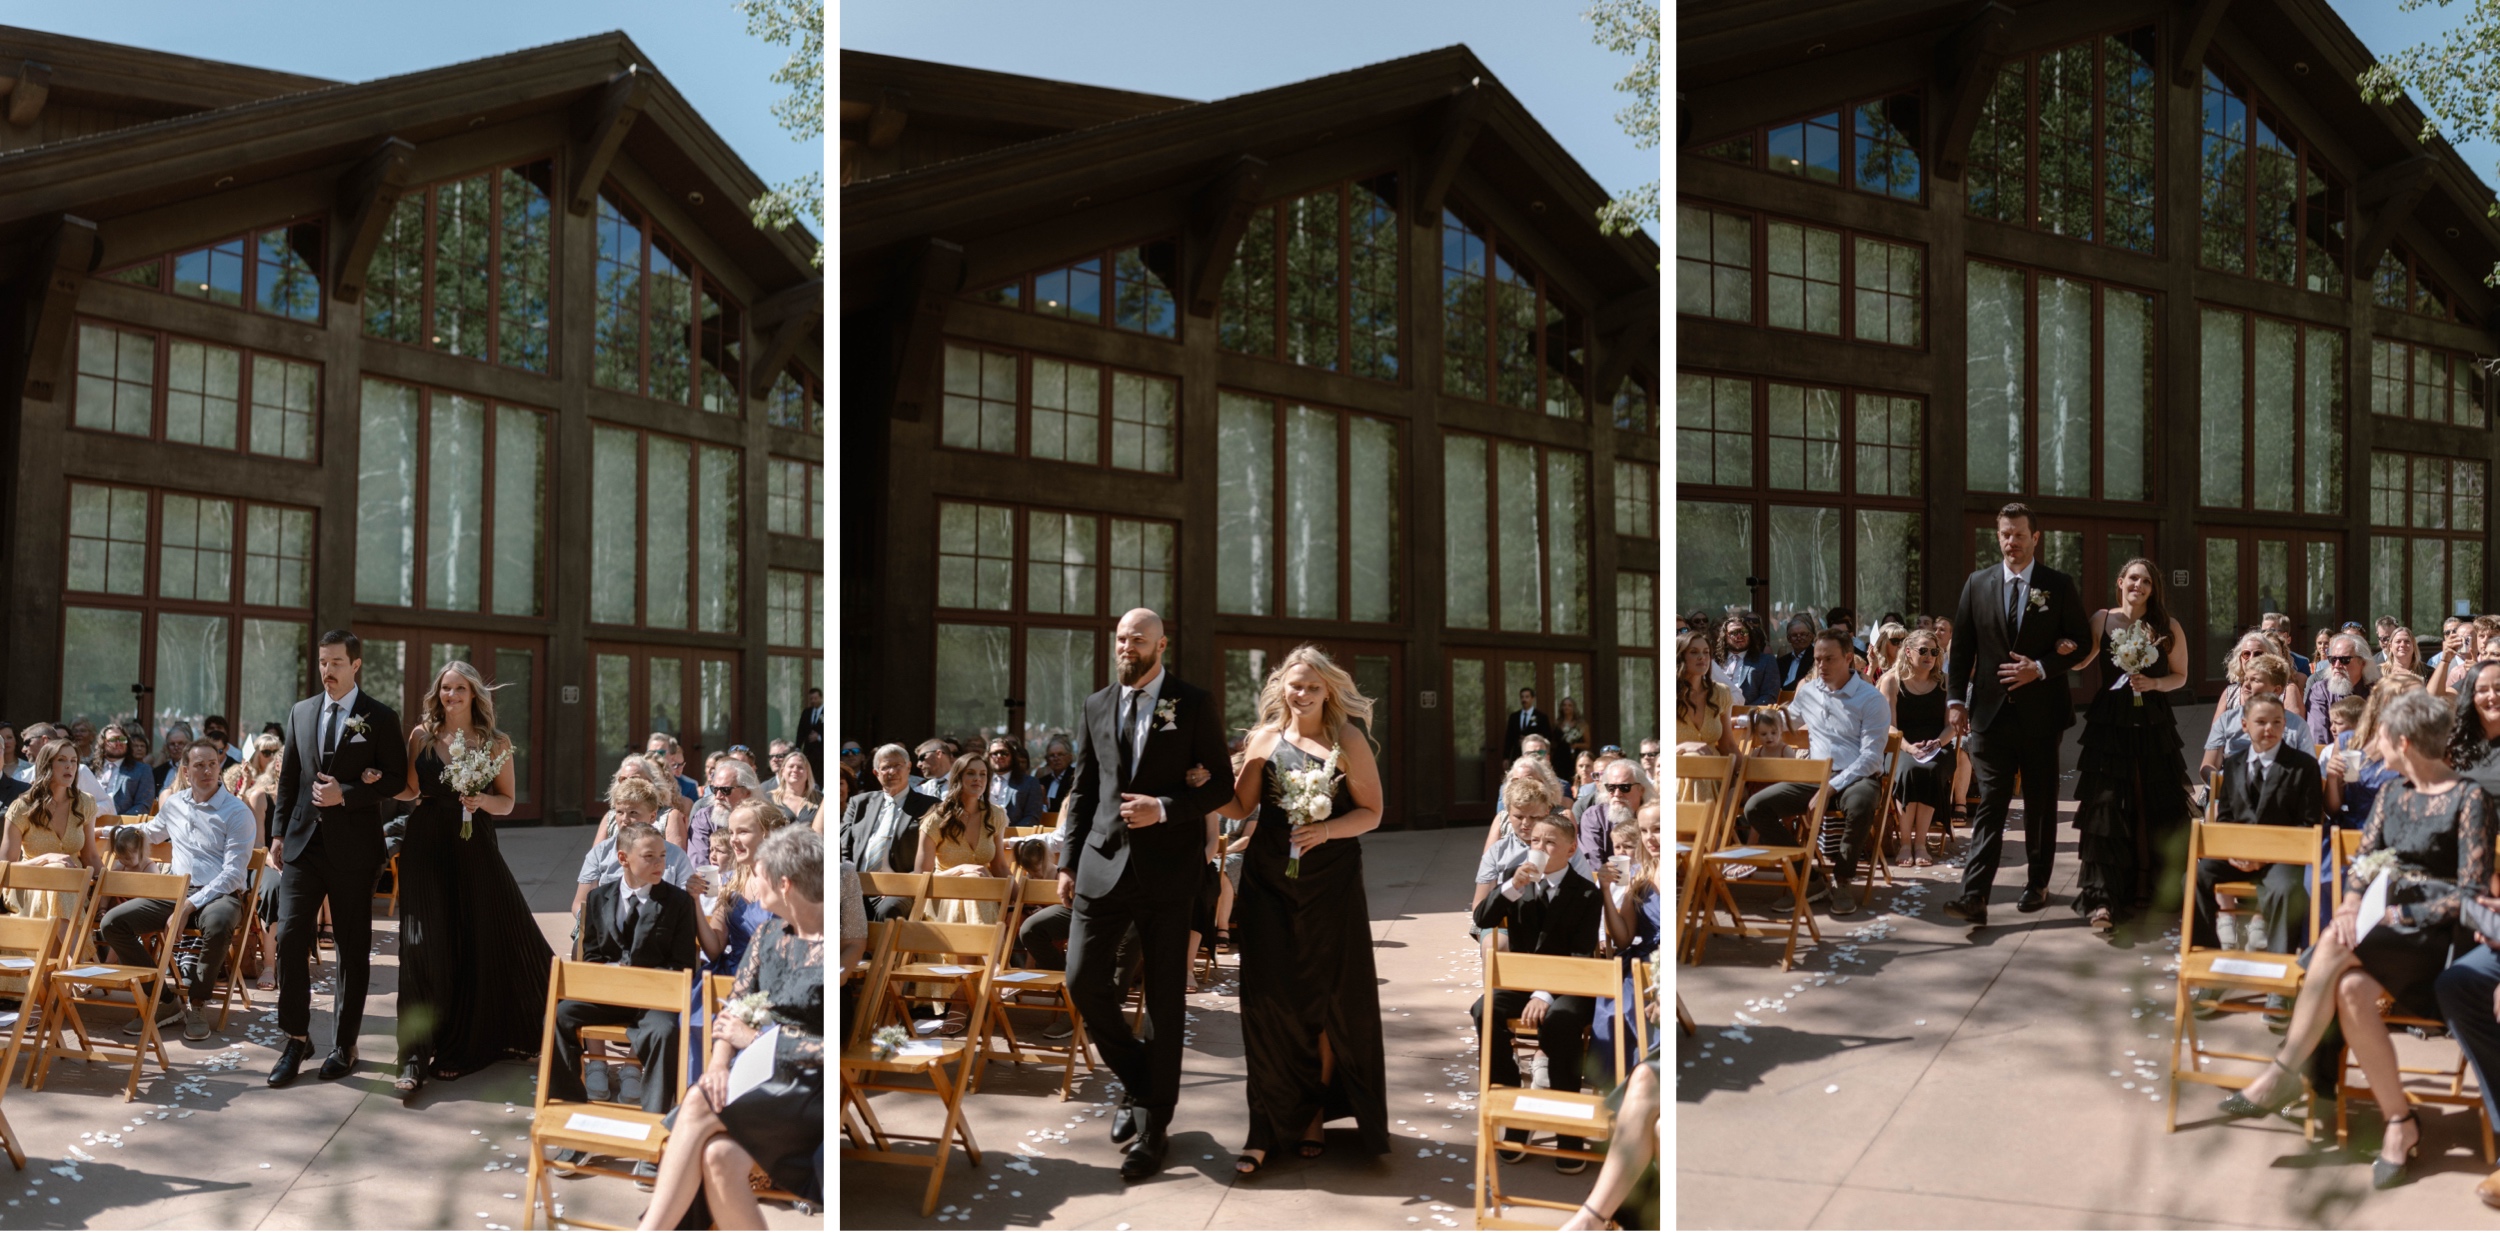 Wedding ceremony in Vail, Colorado. Photo by Colorado wedding photographer Ashley Joyce